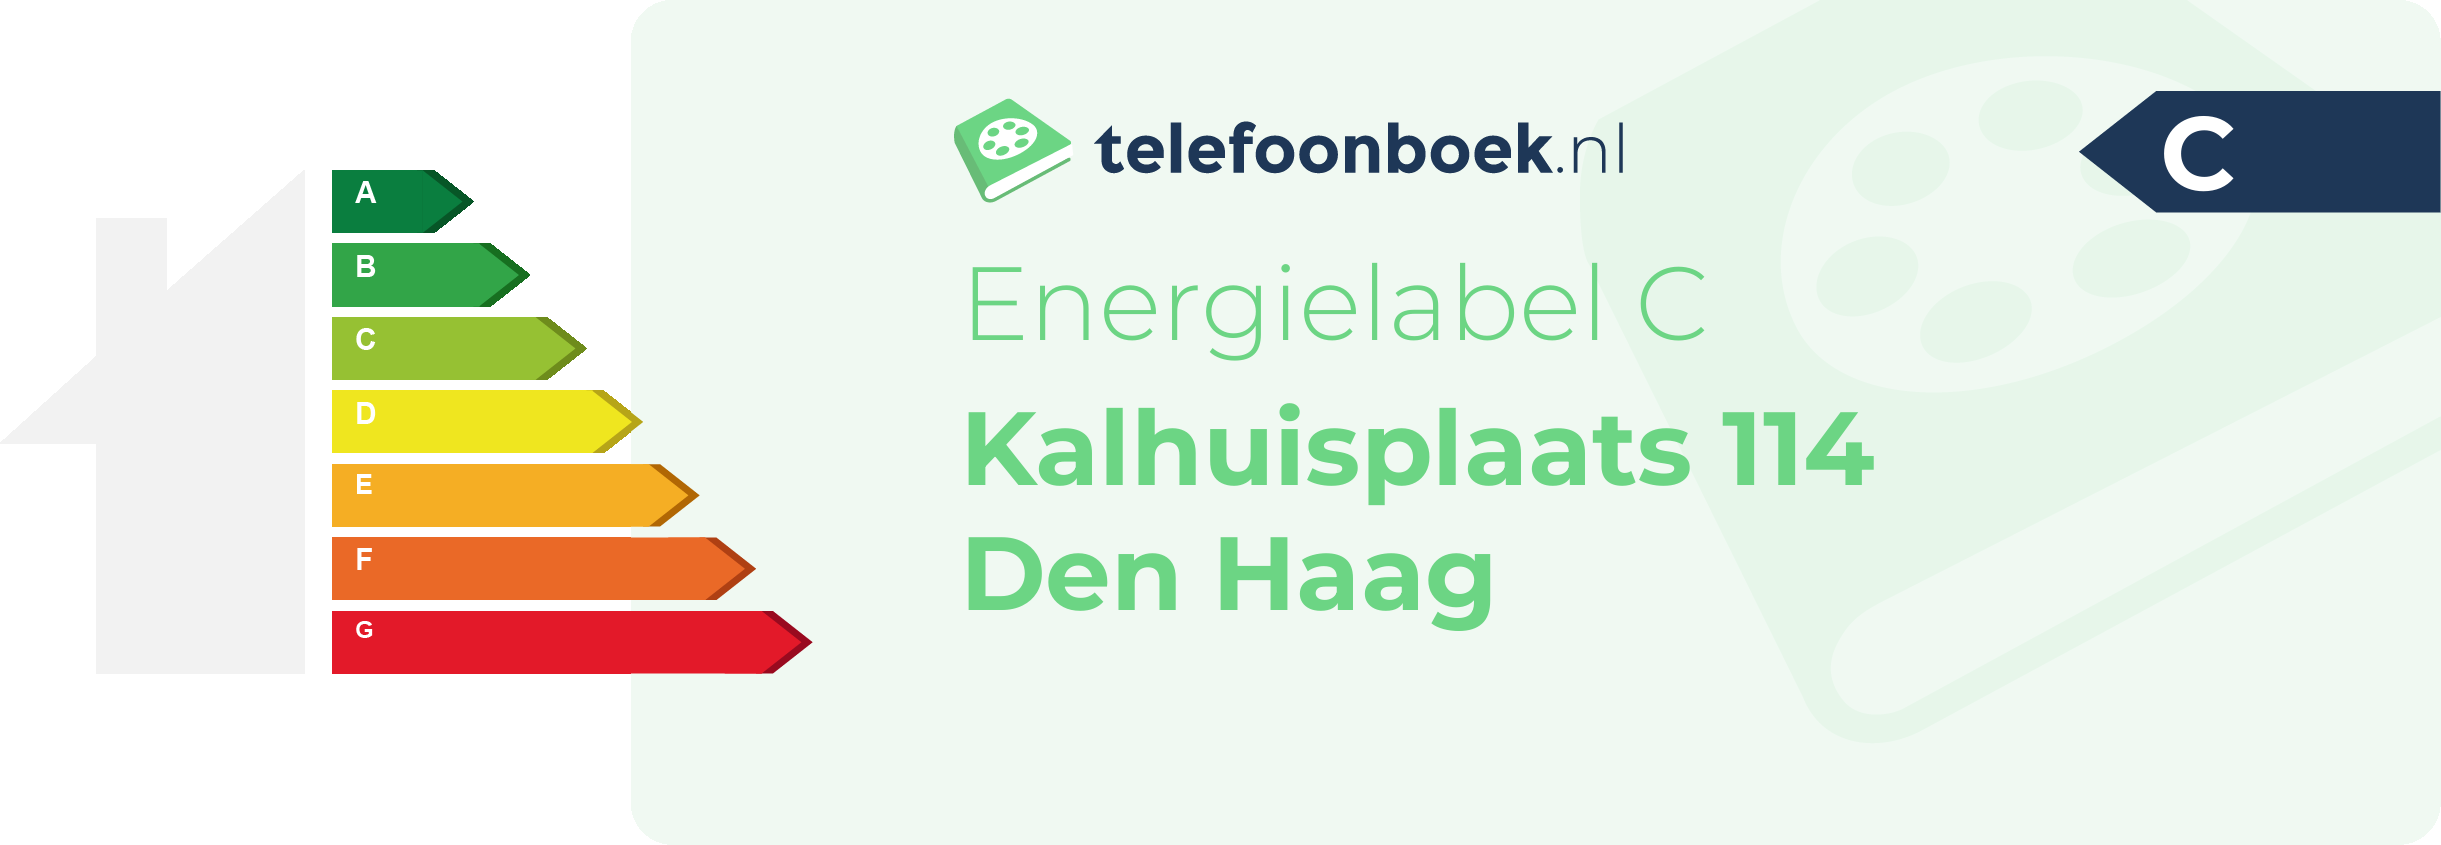 Energielabel Kalhuisplaats 114 Den Haag